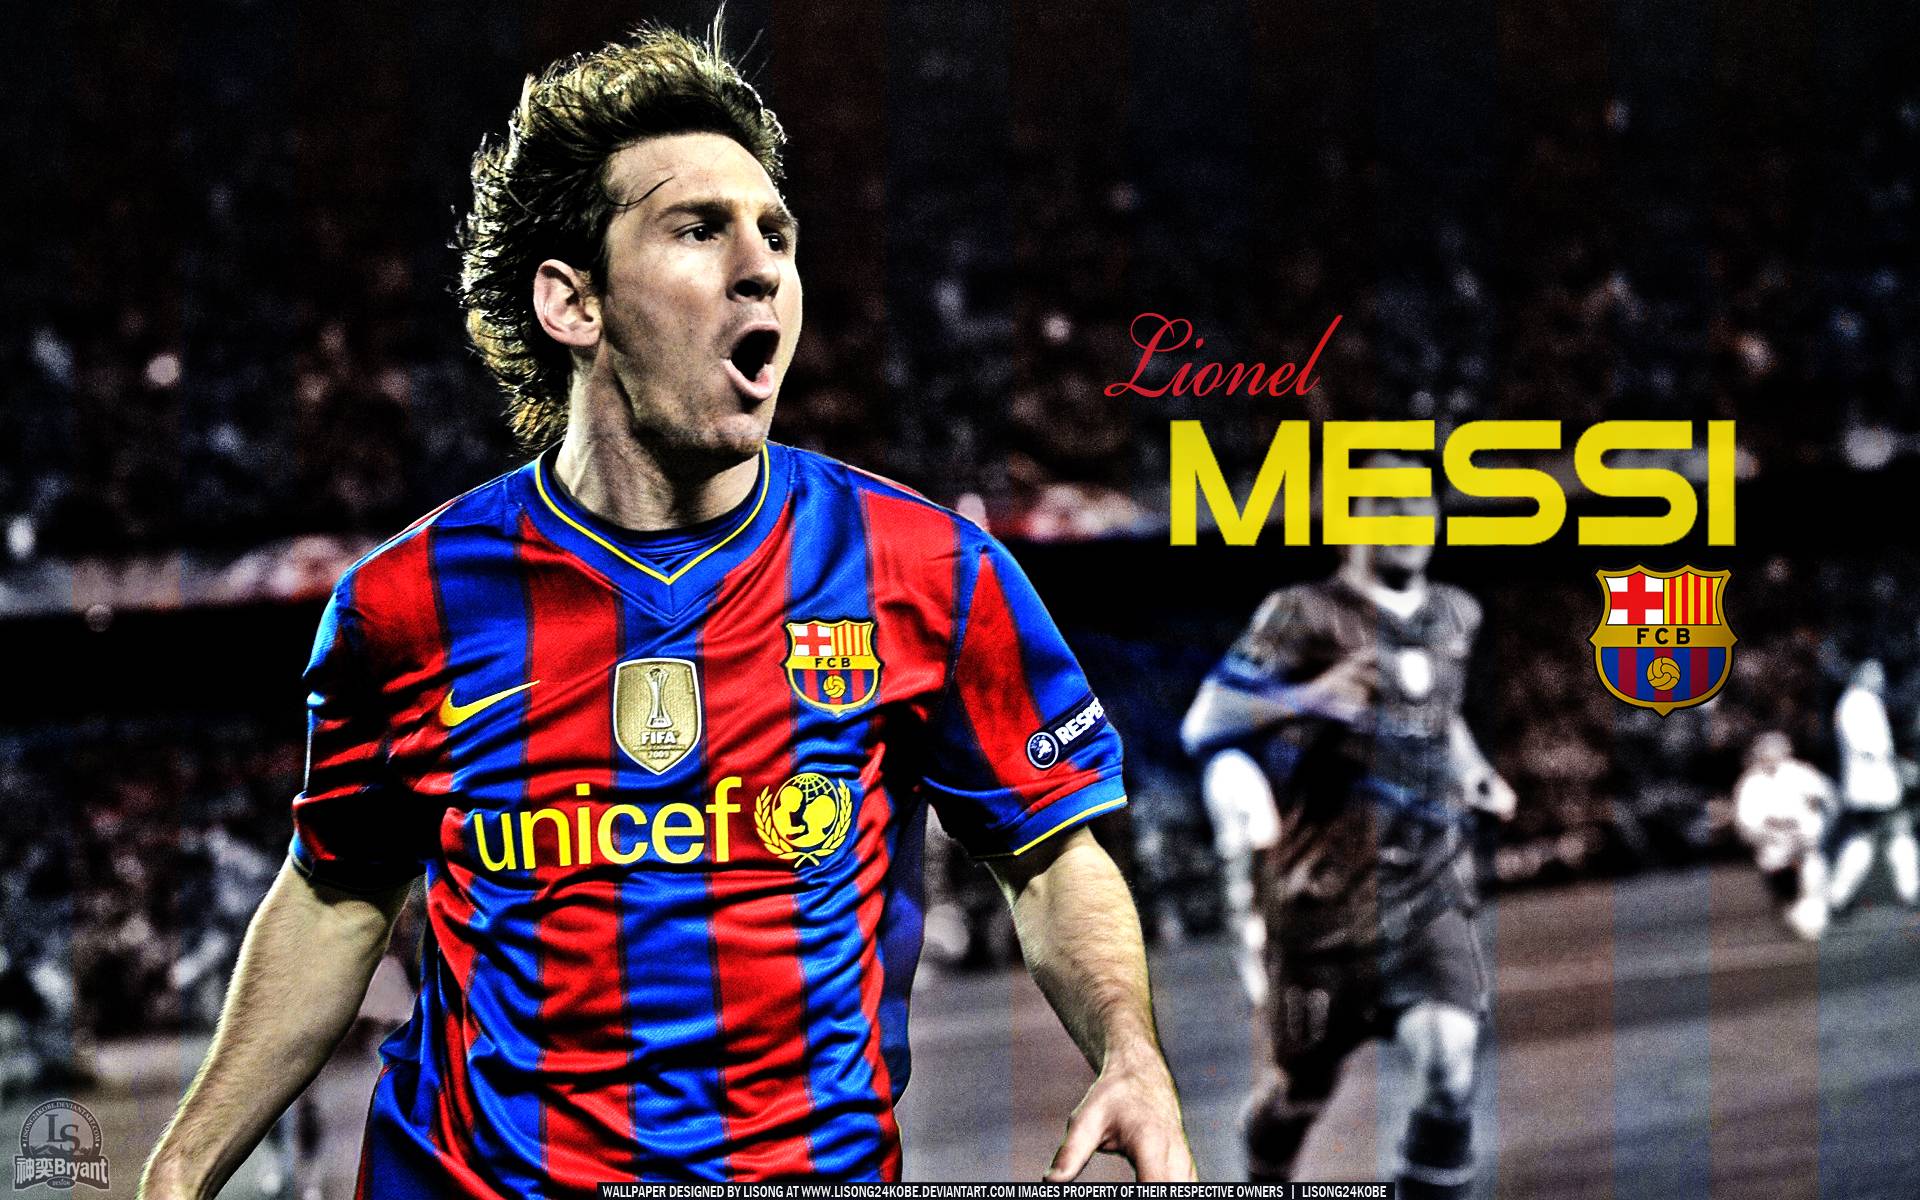 Lionel Messi Wallpaper 2015 Free Desktop 8 HD Wallpapers amagicocom